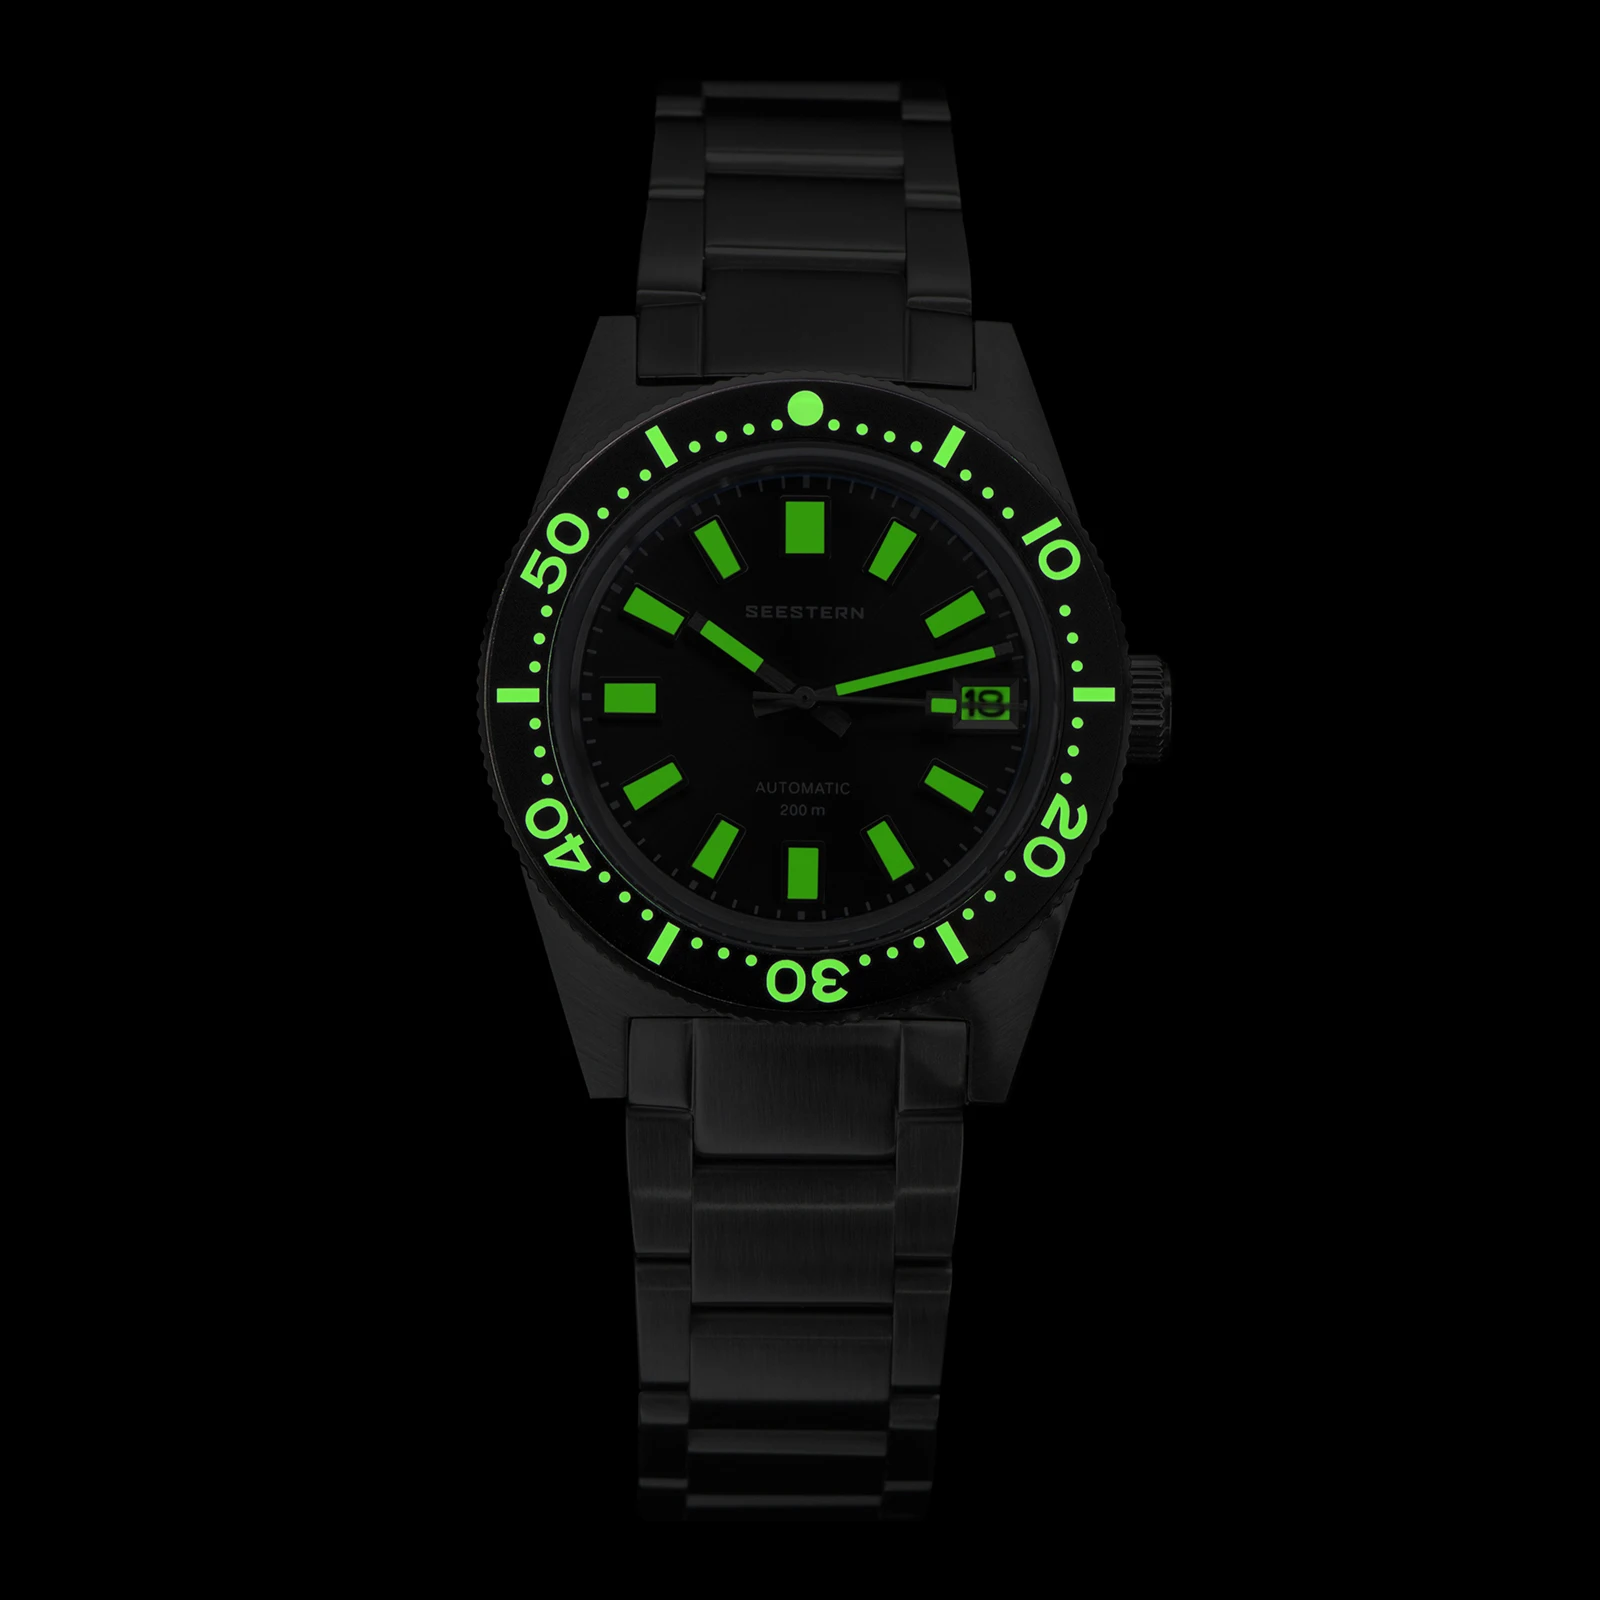 SEESTERN 62MAS Diving Watch Men Automatic Mechanical Wristwatch Luminous Bezel Waterproof NH35 Movement Sapphire Glass Bracelet